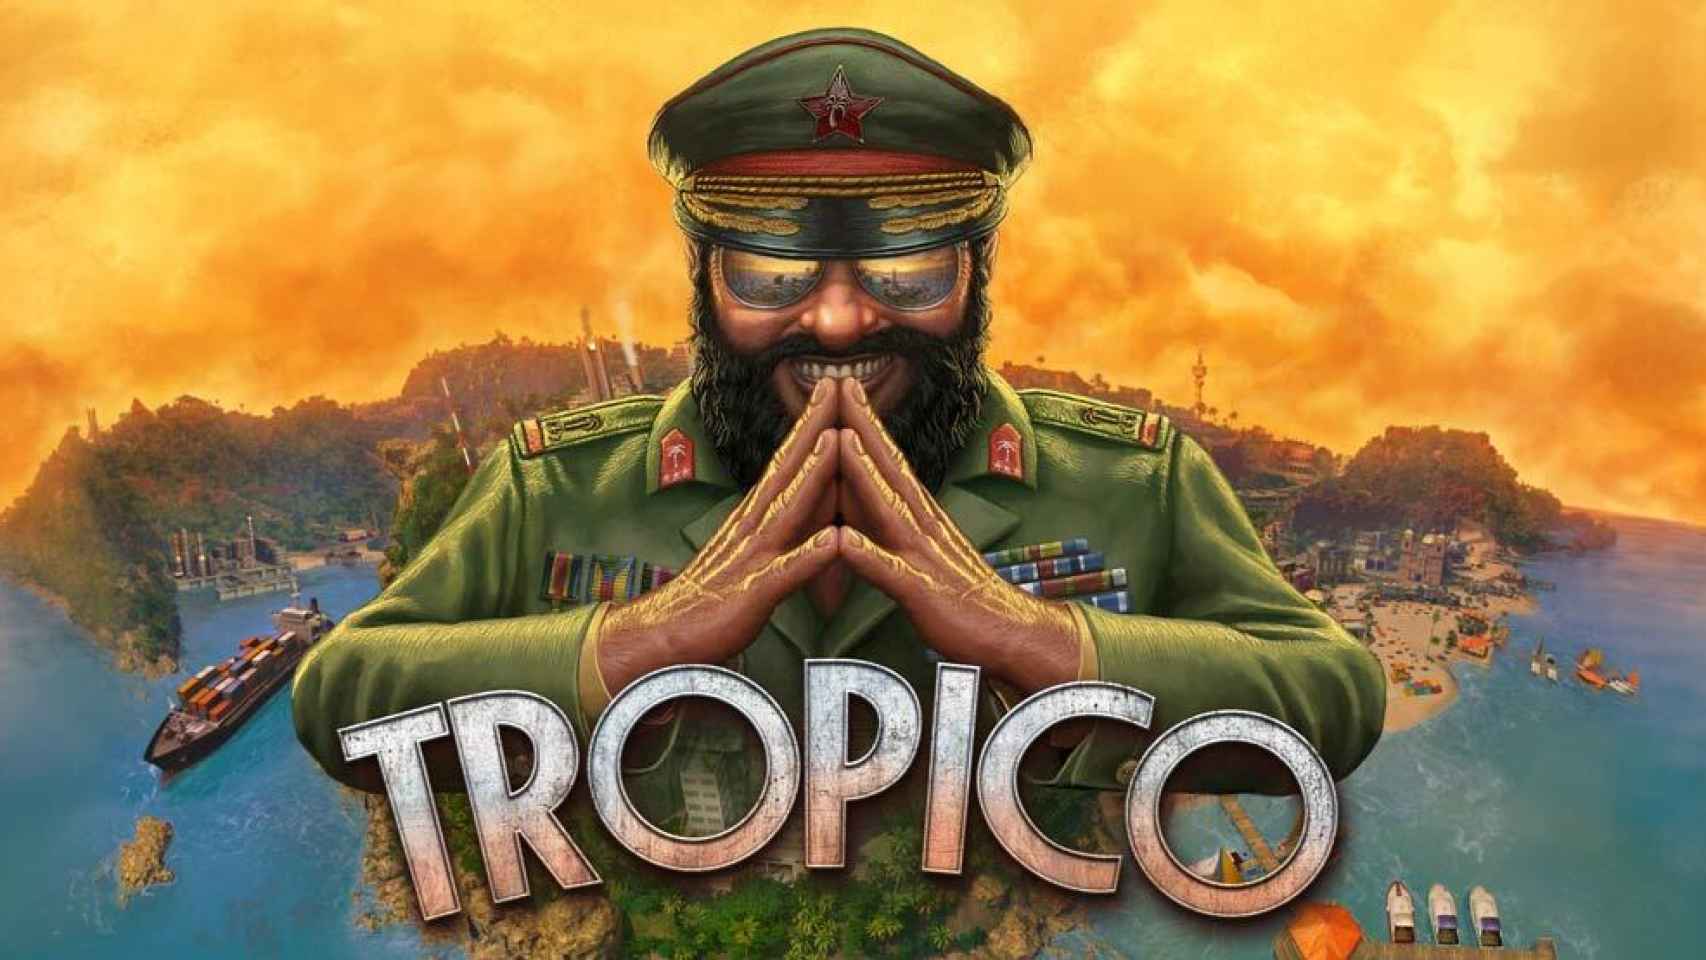 Tropico para Android, uno de los mejores juegos de gestión y construcción